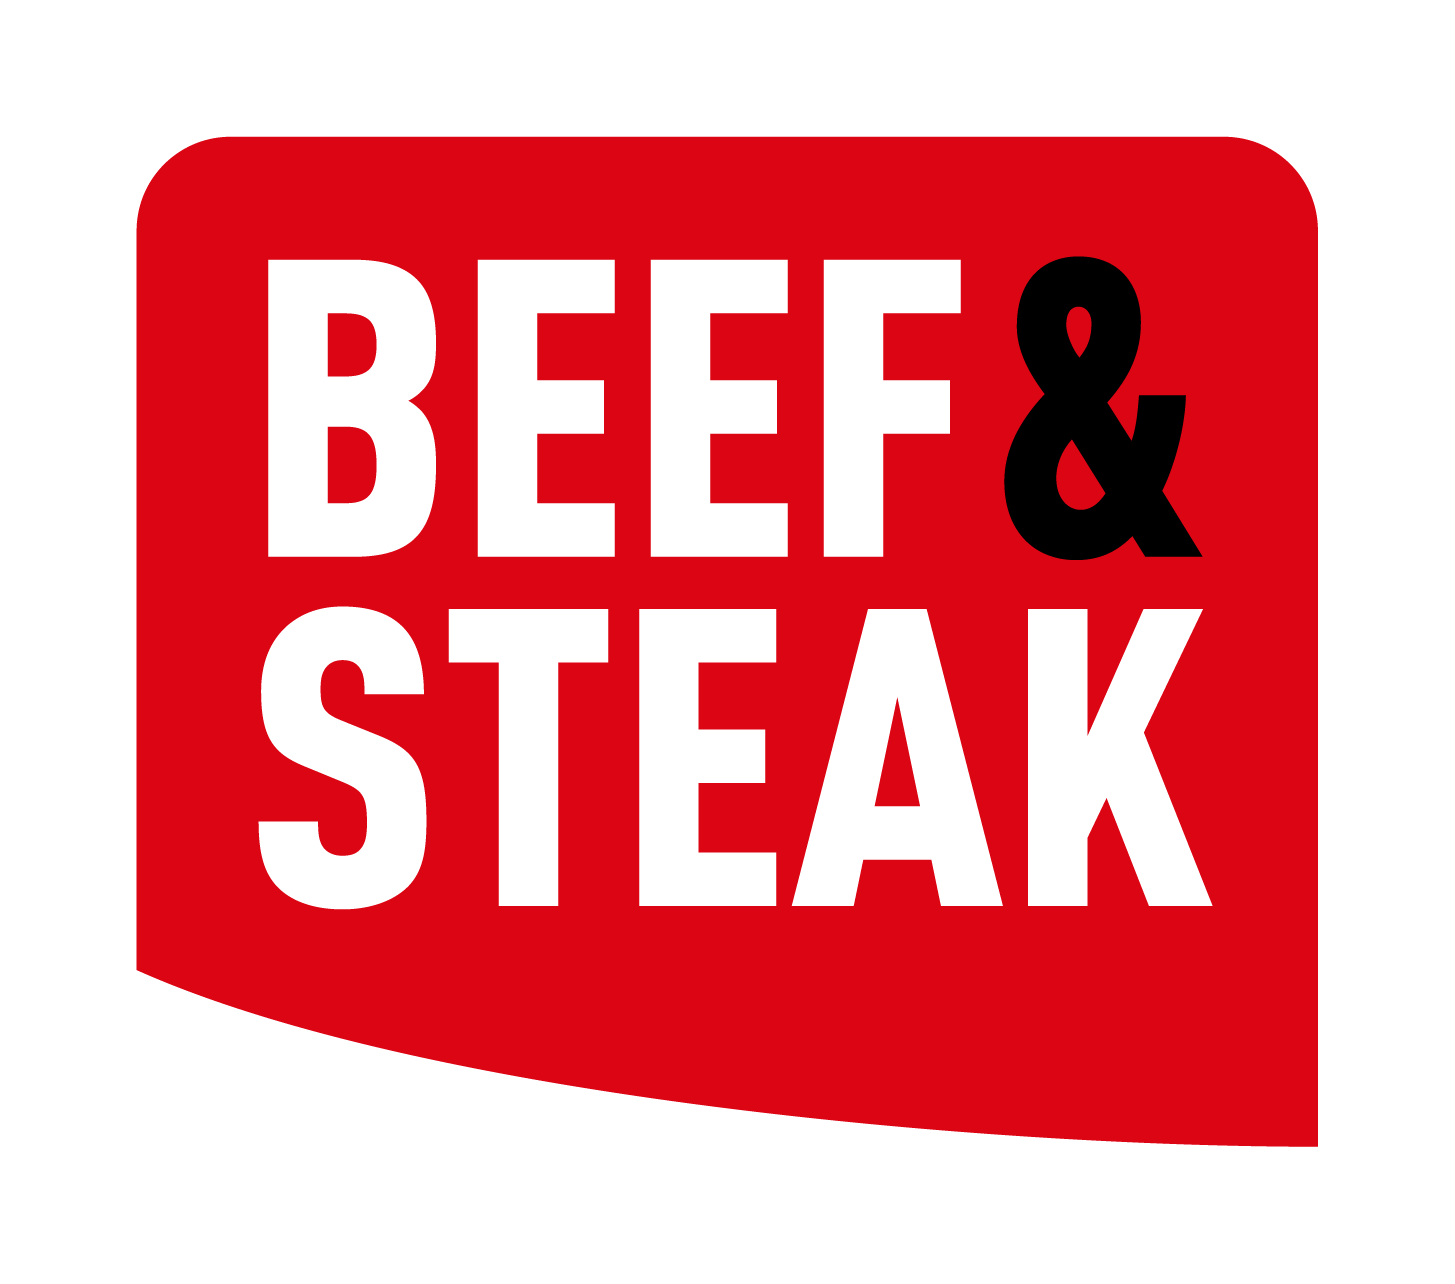 Aberdeen Angus Tomahawk steak